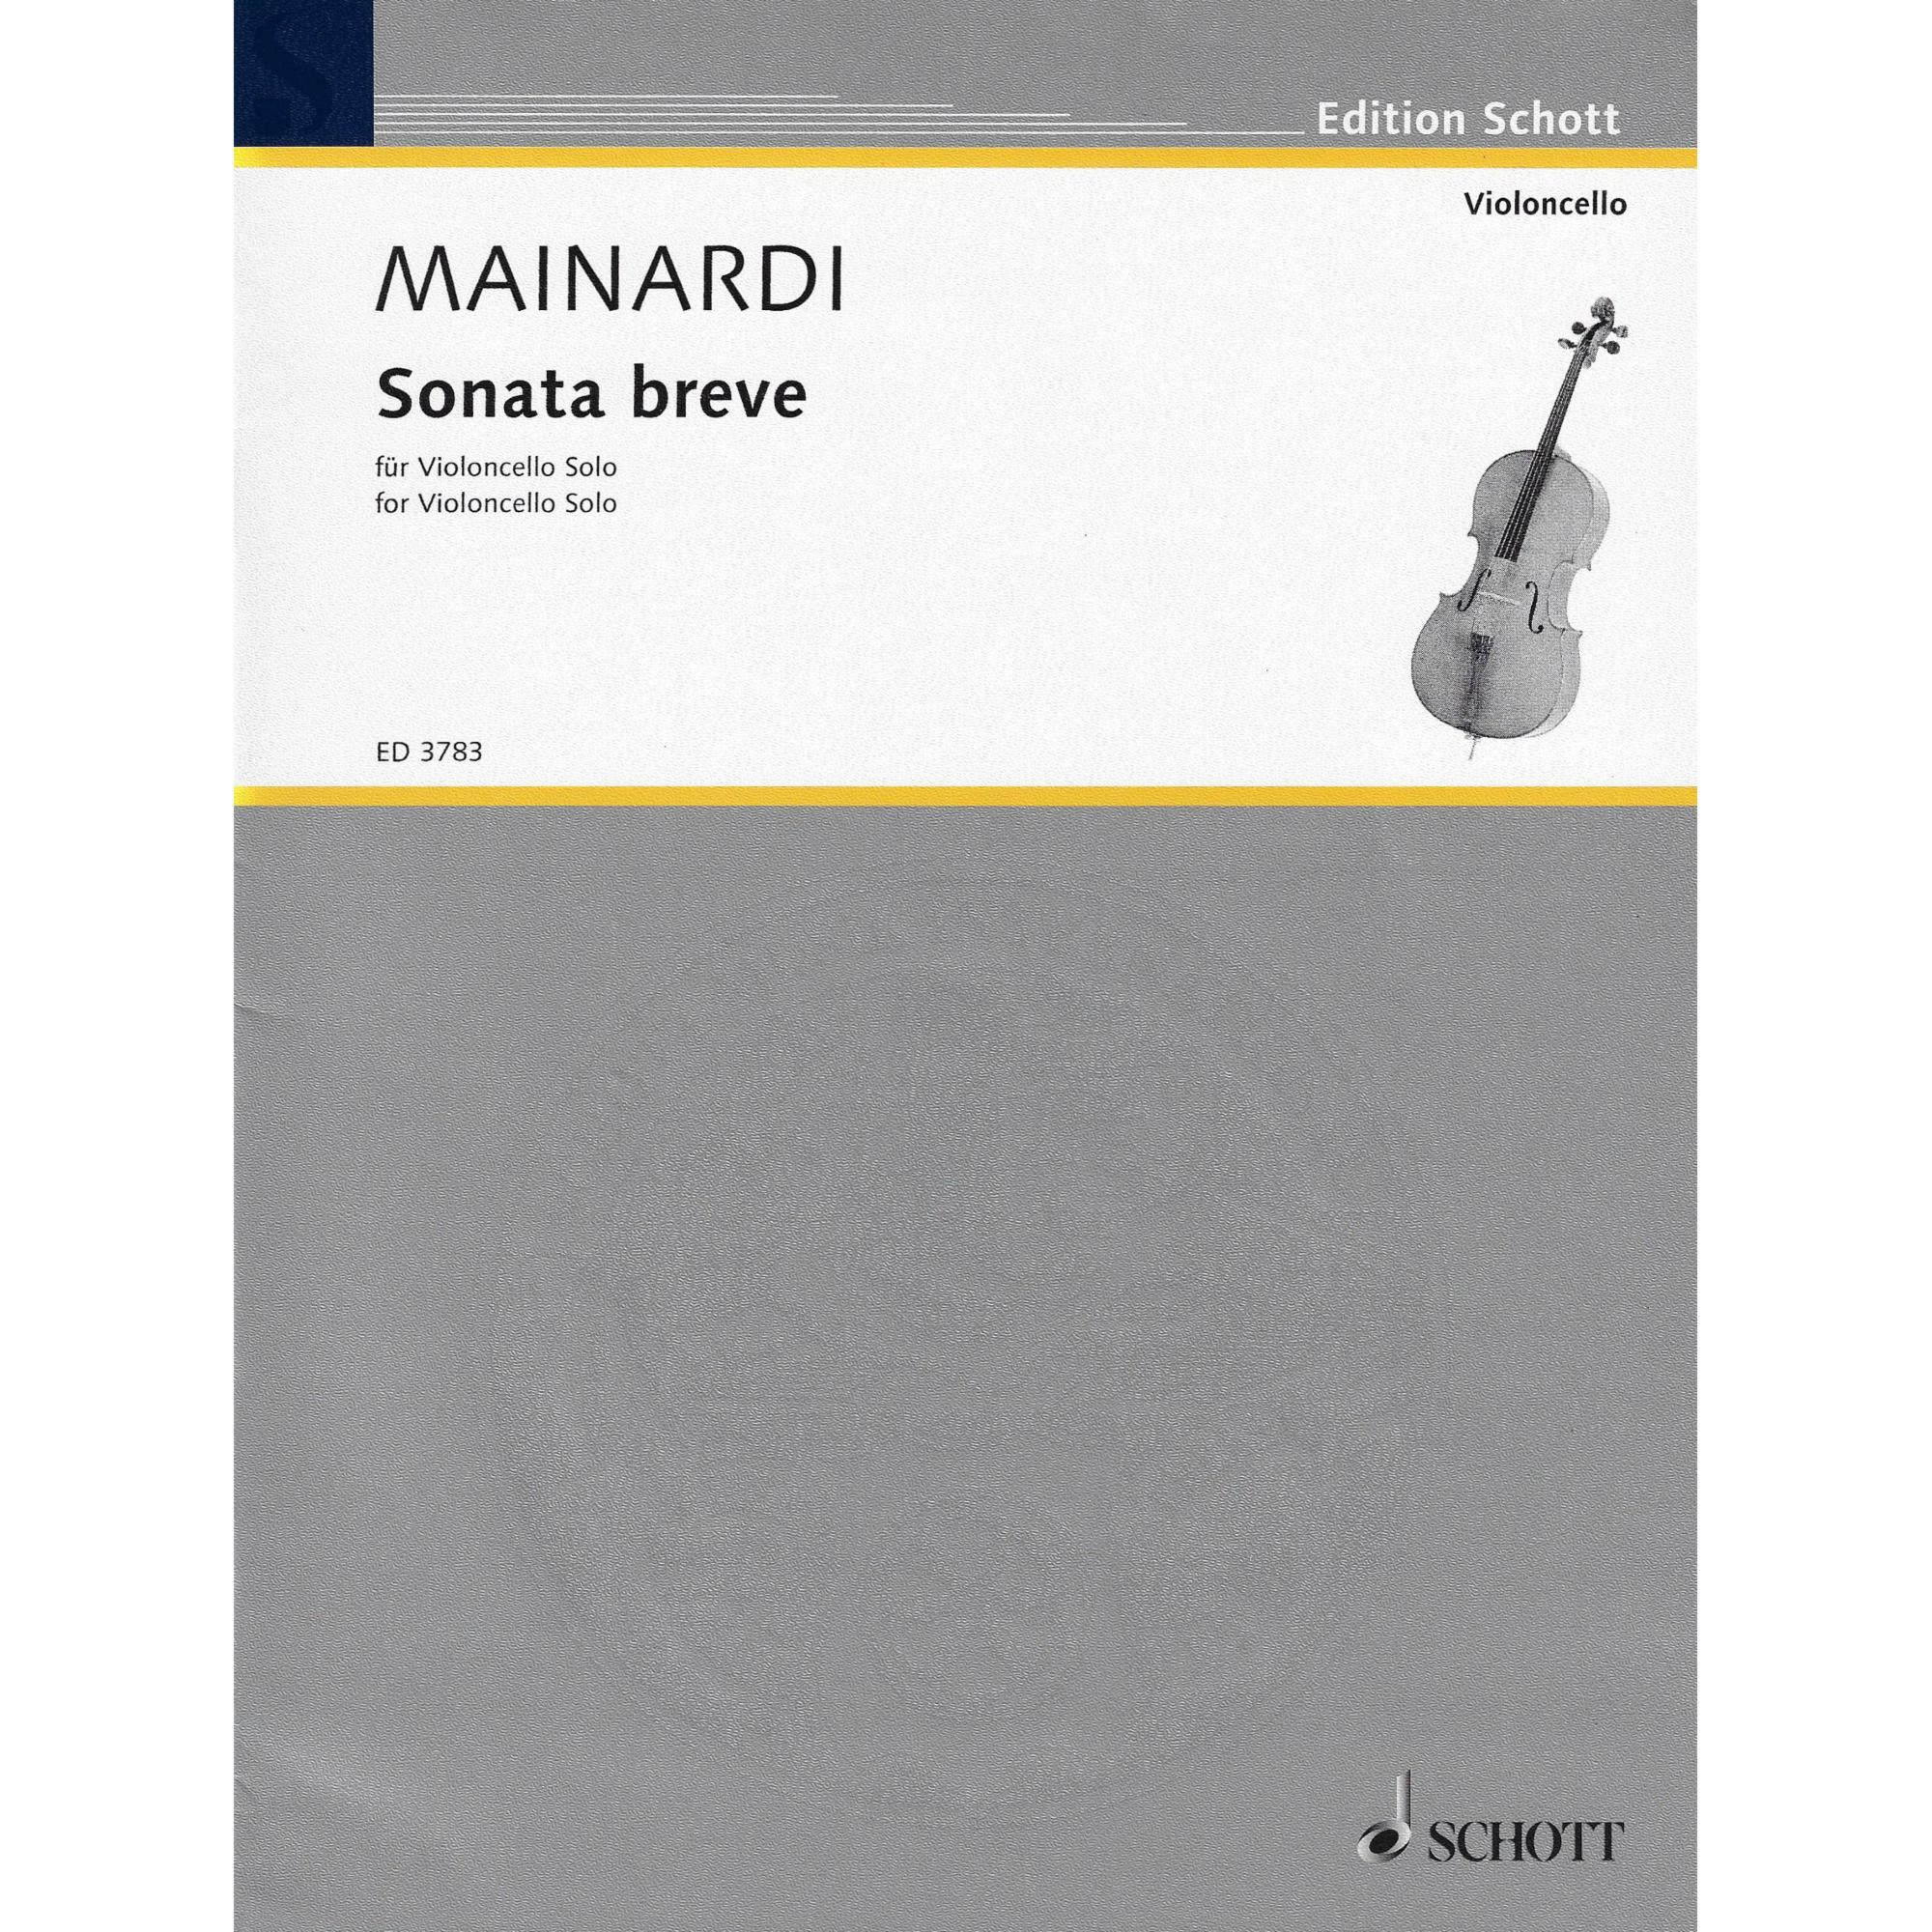 Mainardi -- Sonata breve for Solo Cello